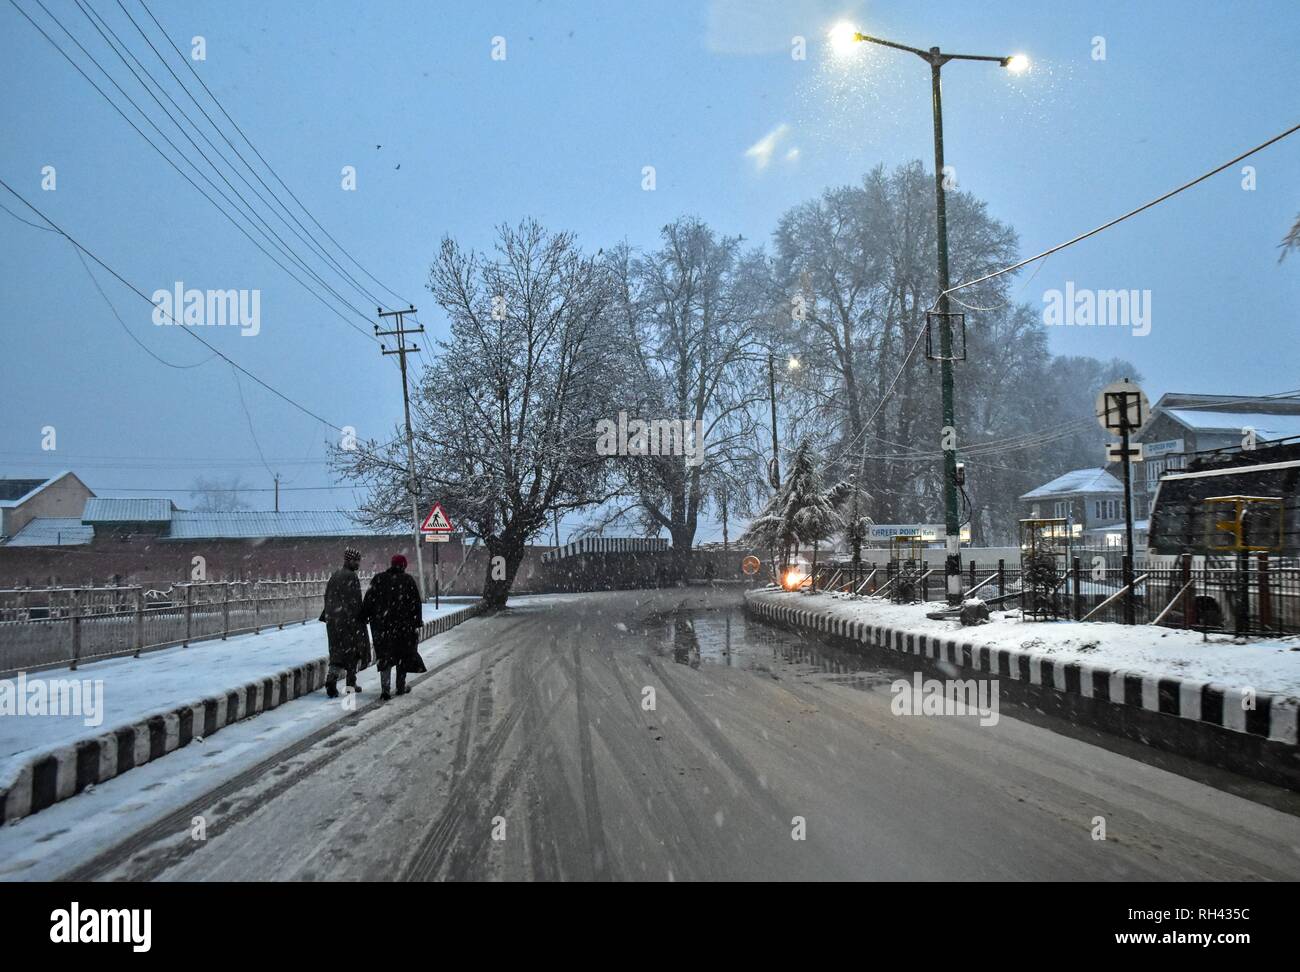 Vu les résidents dans une route couverte de neige pendant les chutes de neige fraîche à Srinagar, Cachemire sous administration indienne. Les chutes de neige fraîche fouetté la plupart des régions de la vallée du Cachemire comme les températures minimales s'élevait au-dessus du point de congélation. L'amélioration des prévisions météorologiques les hommes dans les conditions climatiques. Banque D'Images